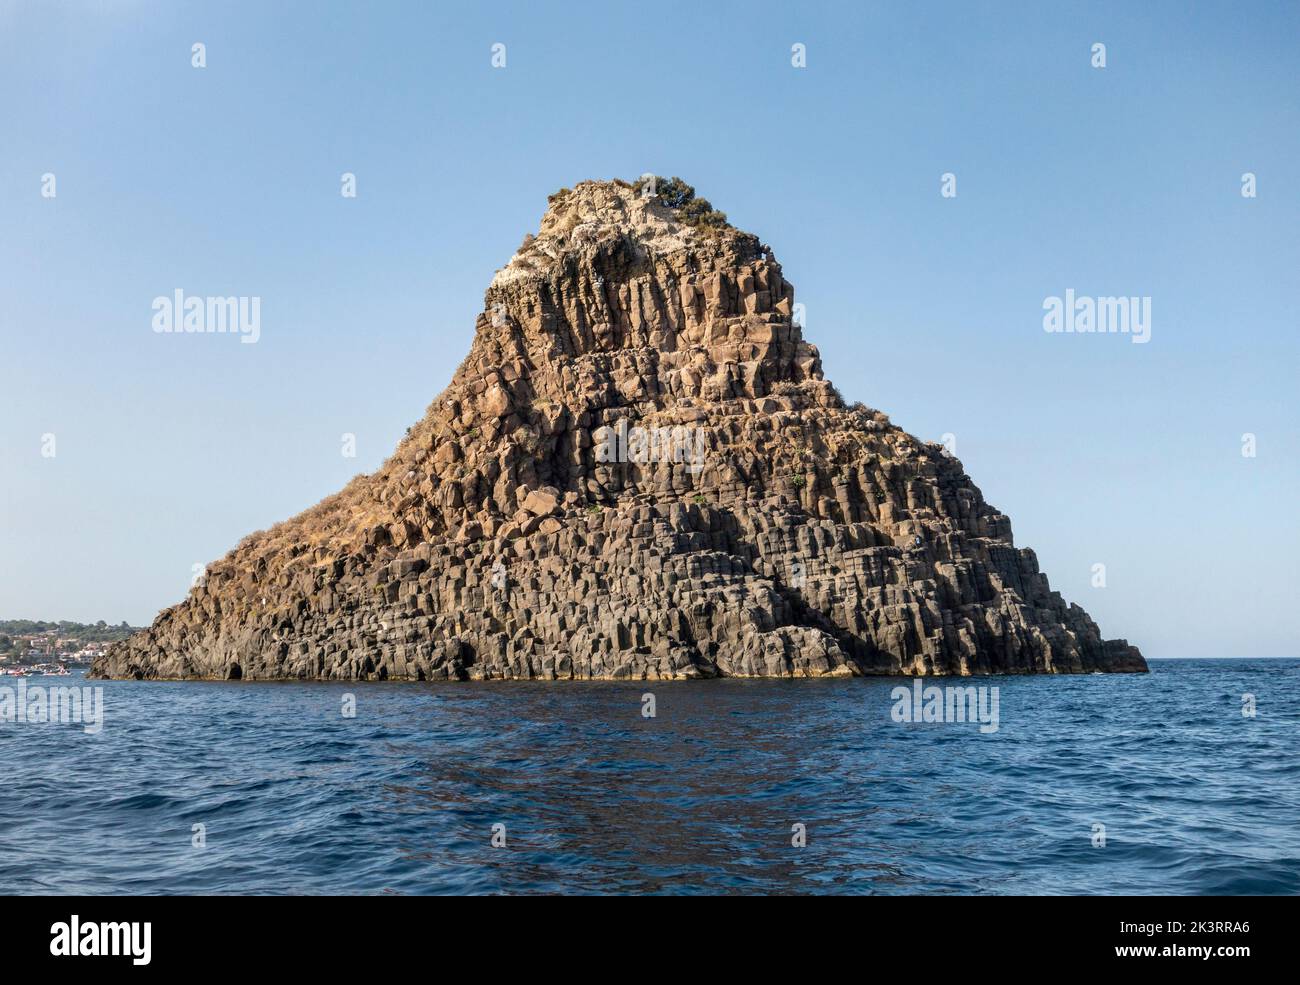 Les Faraglioni ou Isole dei Ciclopi (îles Cyclopéennes), un groupe de basaltes volcaniques se trouve juste au large de la côte à ACI Trezza, Sicile, Italie Banque D'Images